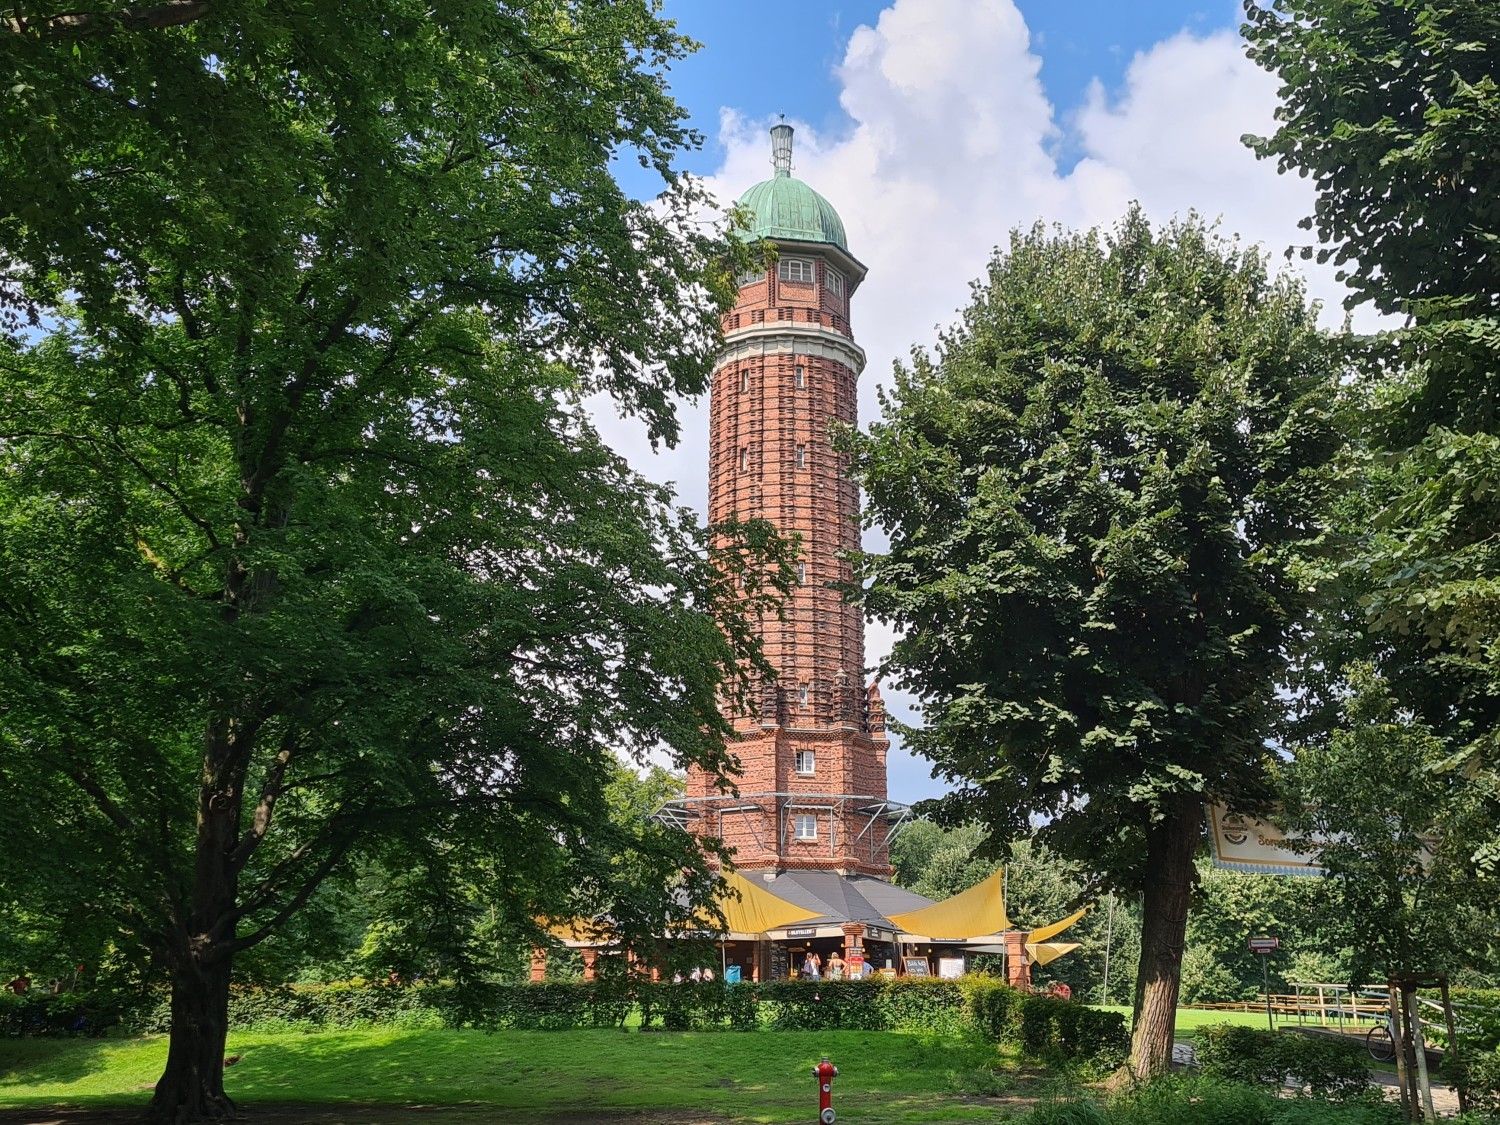 Der Wasserturm im Jungfernheide-Park